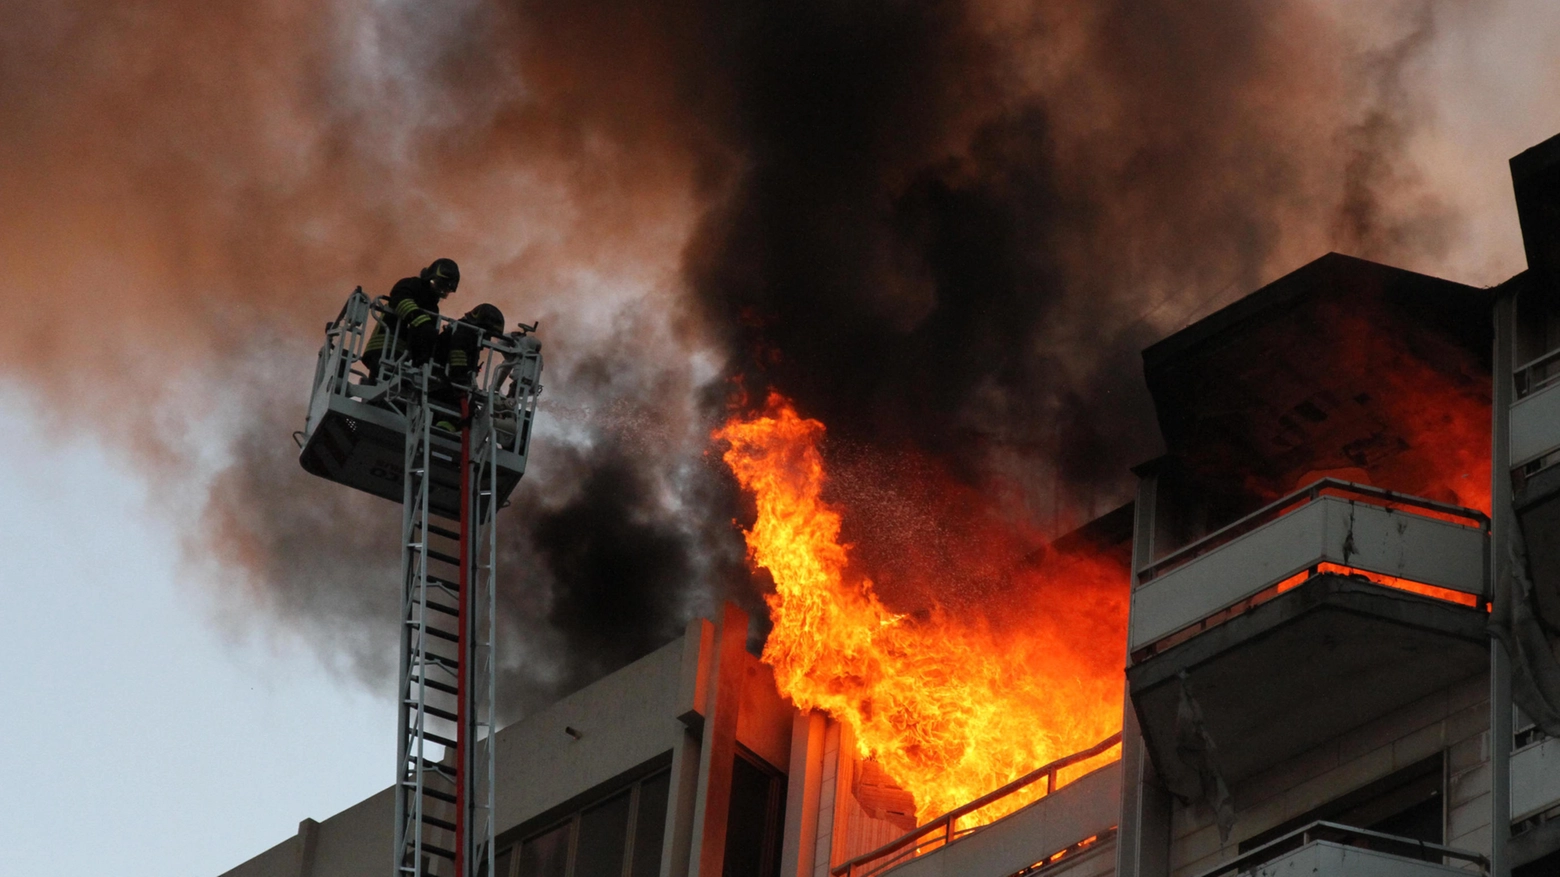 Incendio in un appartamento a Roma, candele accese in casa (immagine d'archivio)